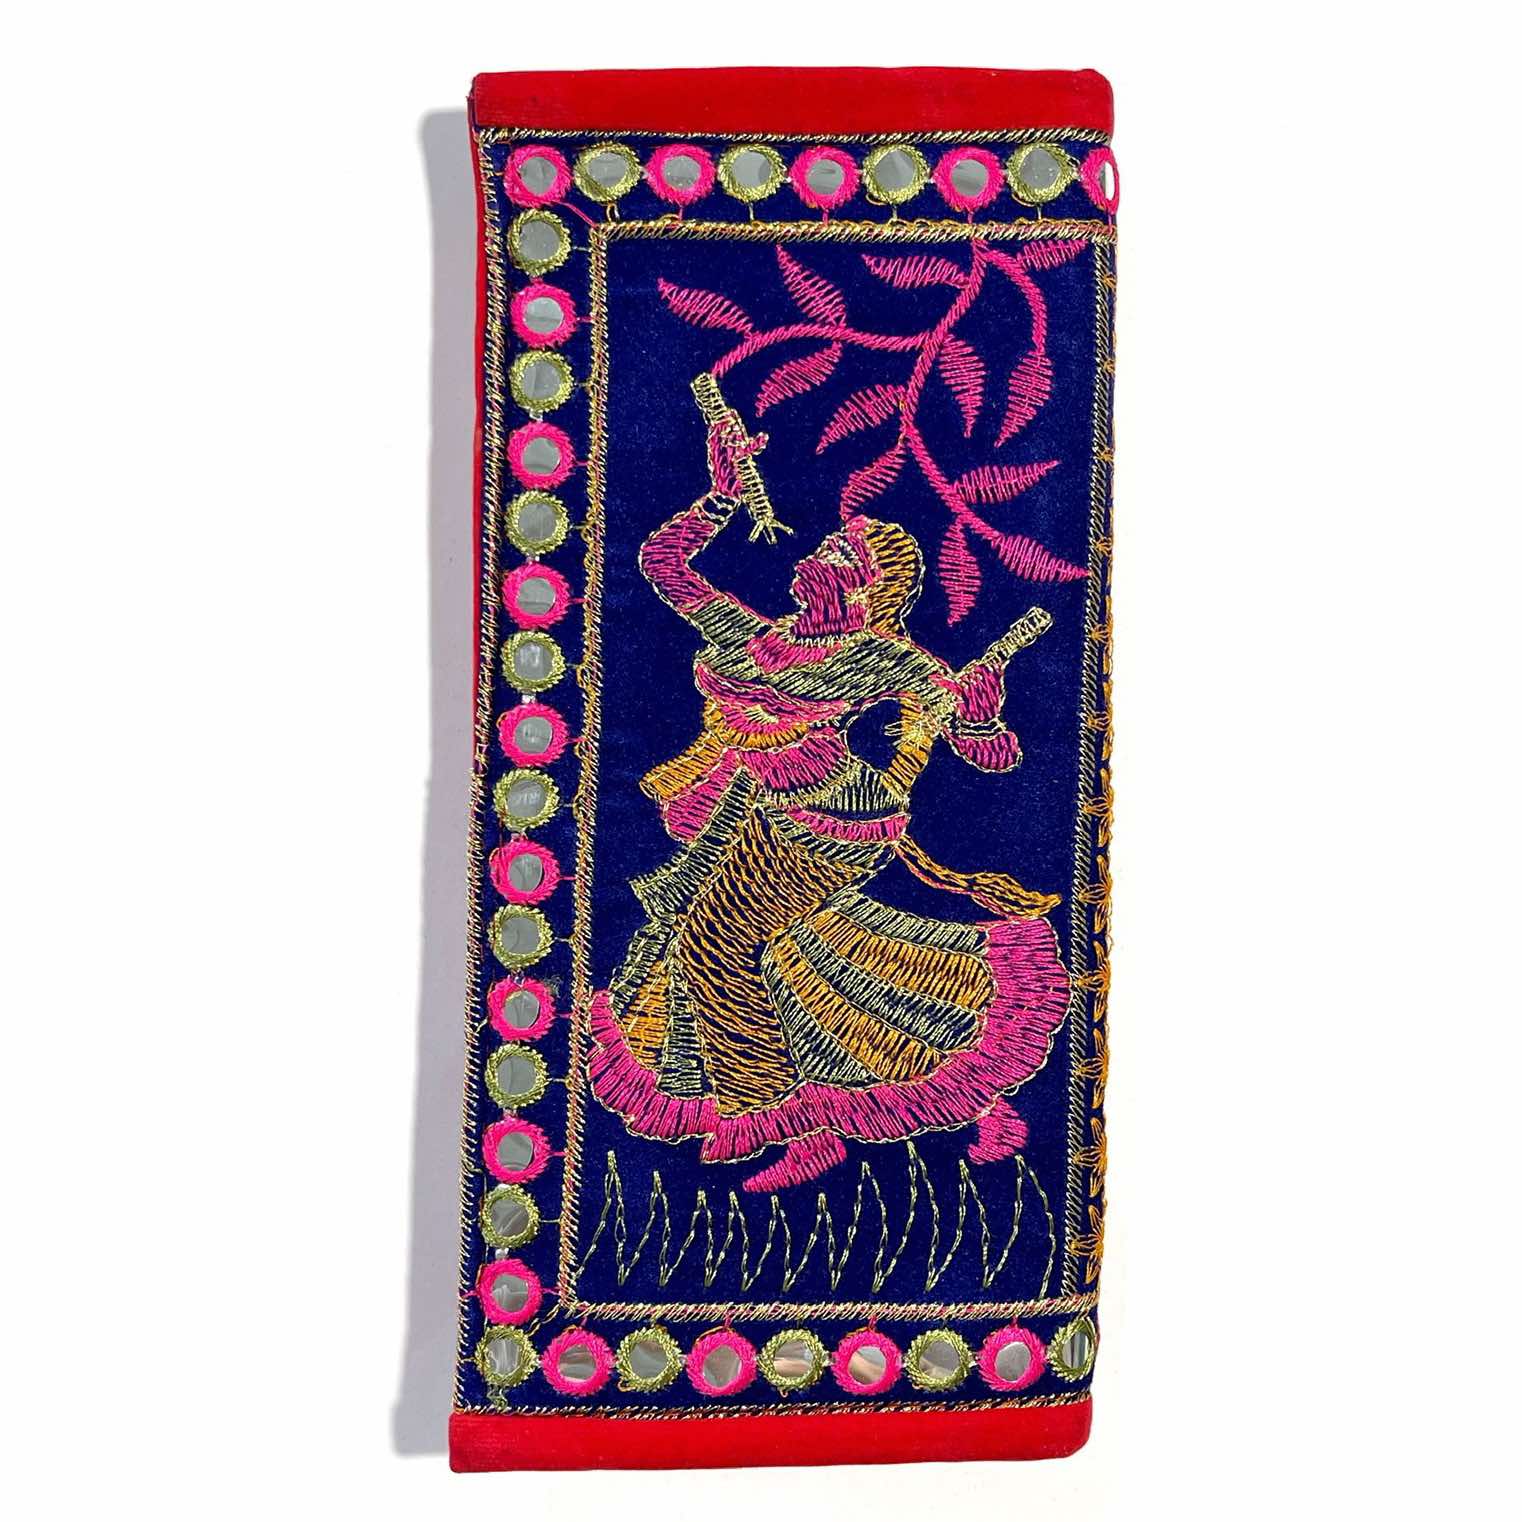 Кошелёк индийский этнический на магнитной защёлке (разные цвета и дизайн, вышивка, размер 23,5 на 11 см.), 1 шт.